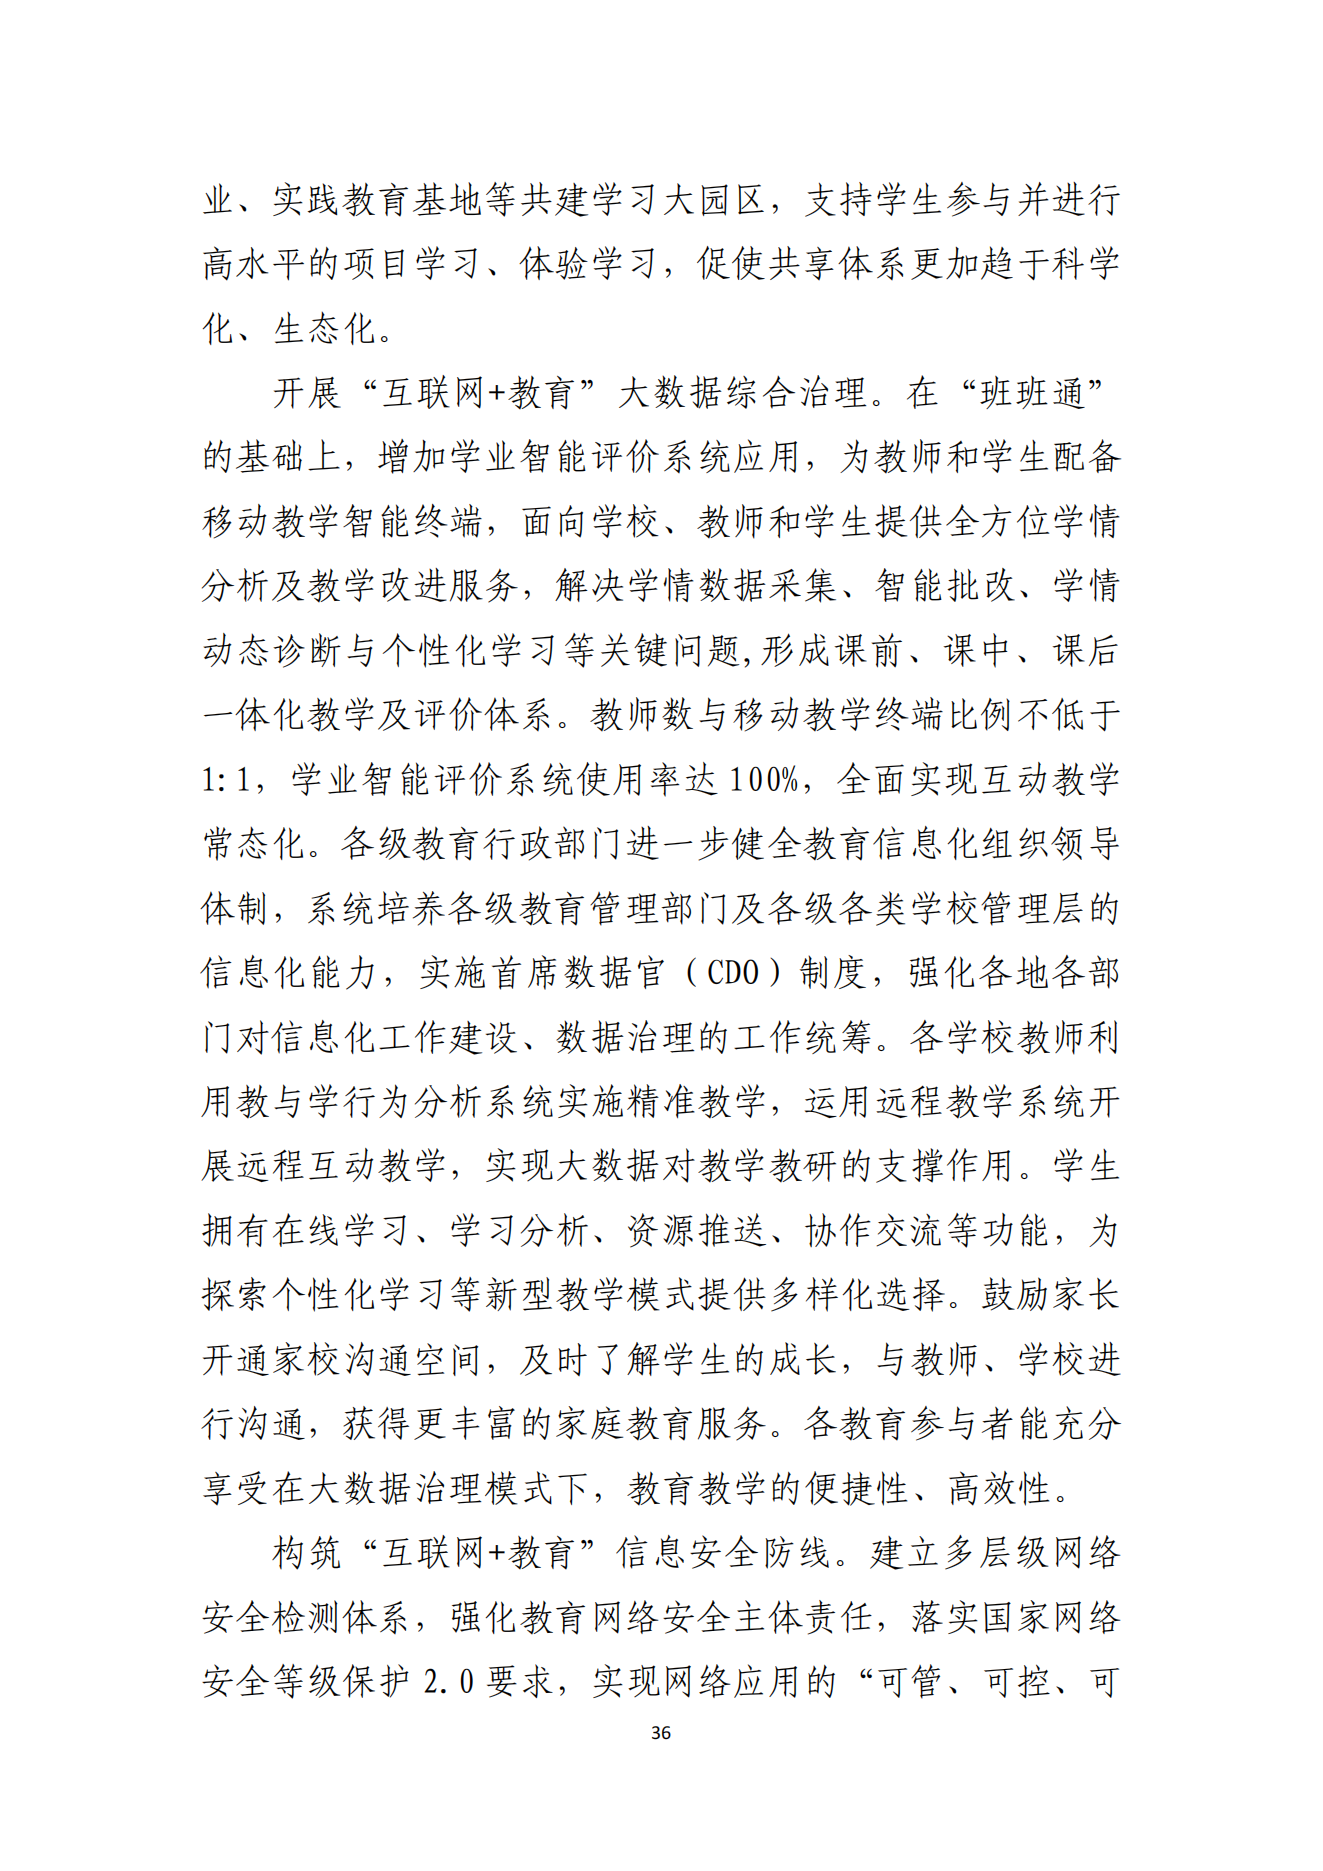 湛江市人民政府办公室关于印发湛江市教育发展“十四五”规划的通知_35.png